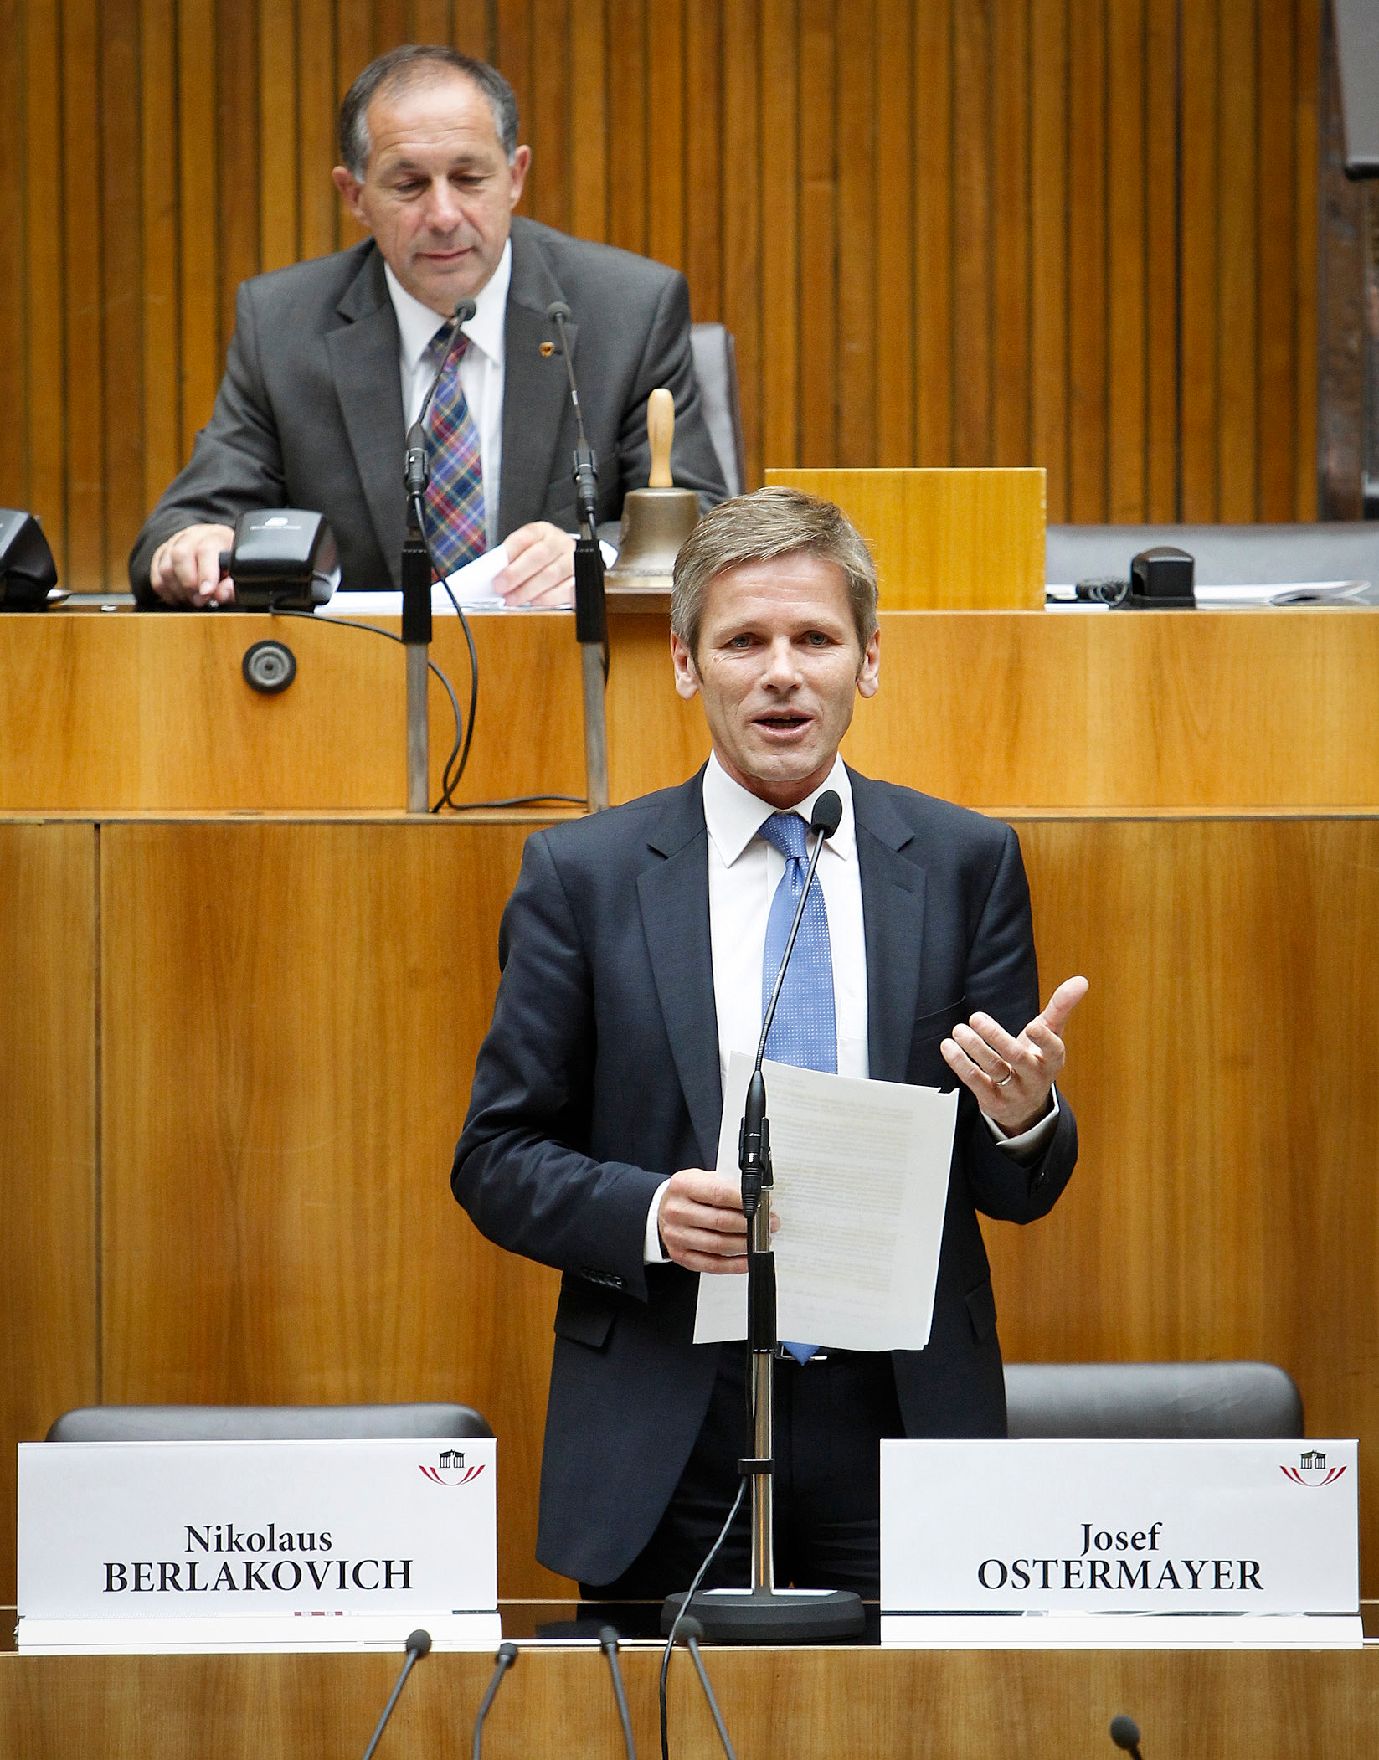 Am 10. Oktober 2012 hielt Staatssekretär Josef Ostermayer eine Rede bei der Parlamentarischen Enquete: "Zukunft Land: Trends, Herausforderungen und Lösungen" im Parlament.